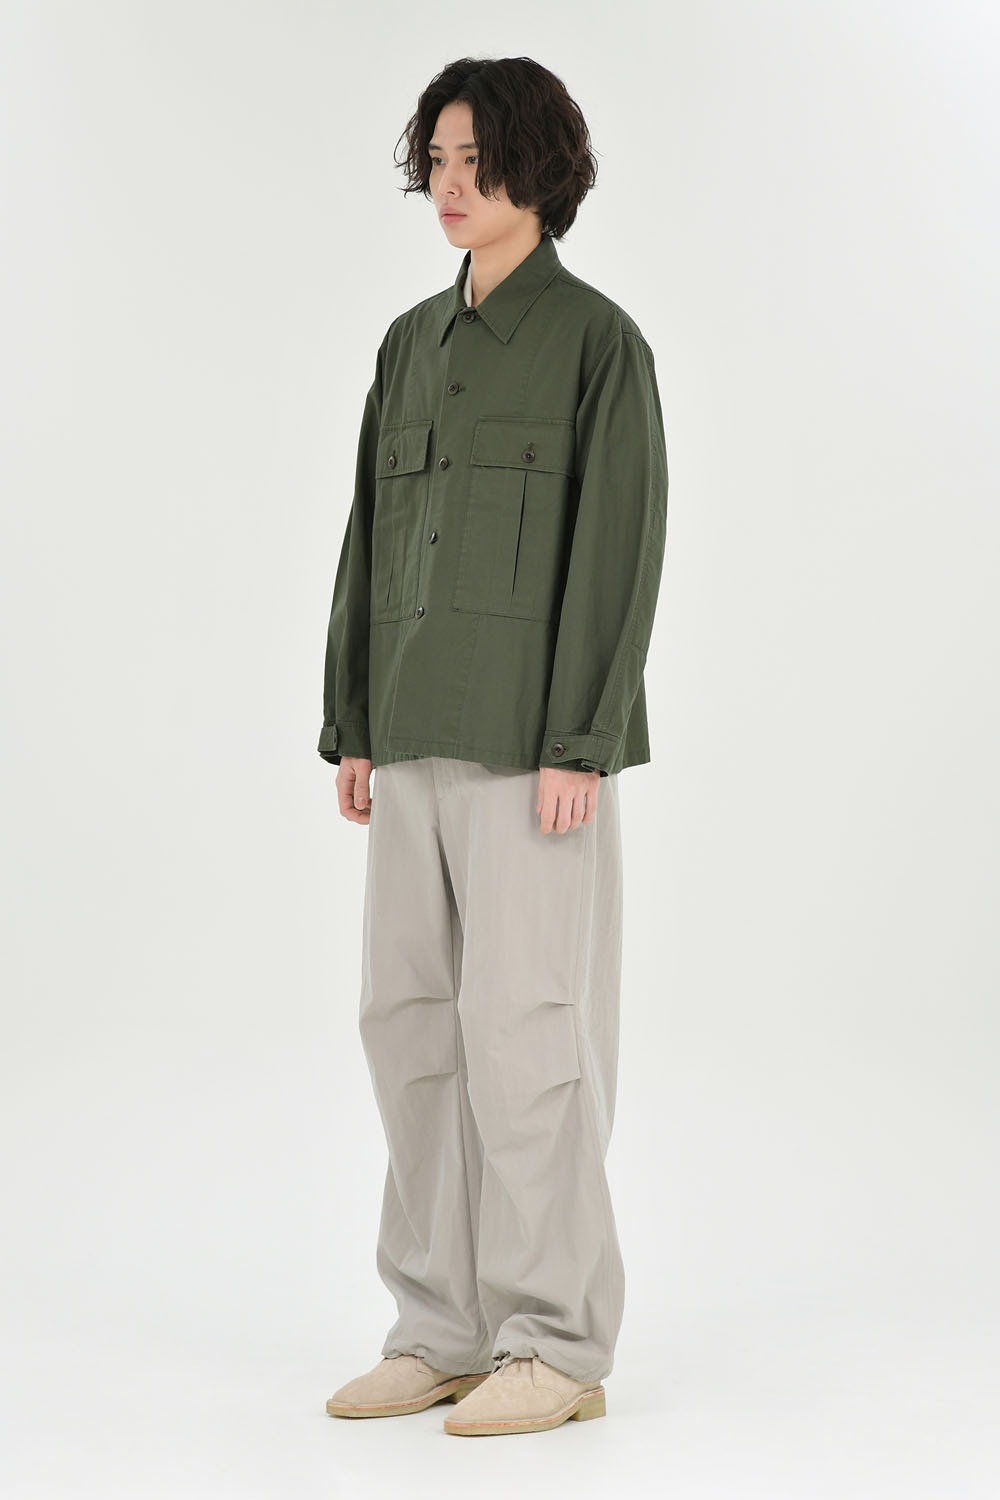 Military Shirt Jacket-Olive